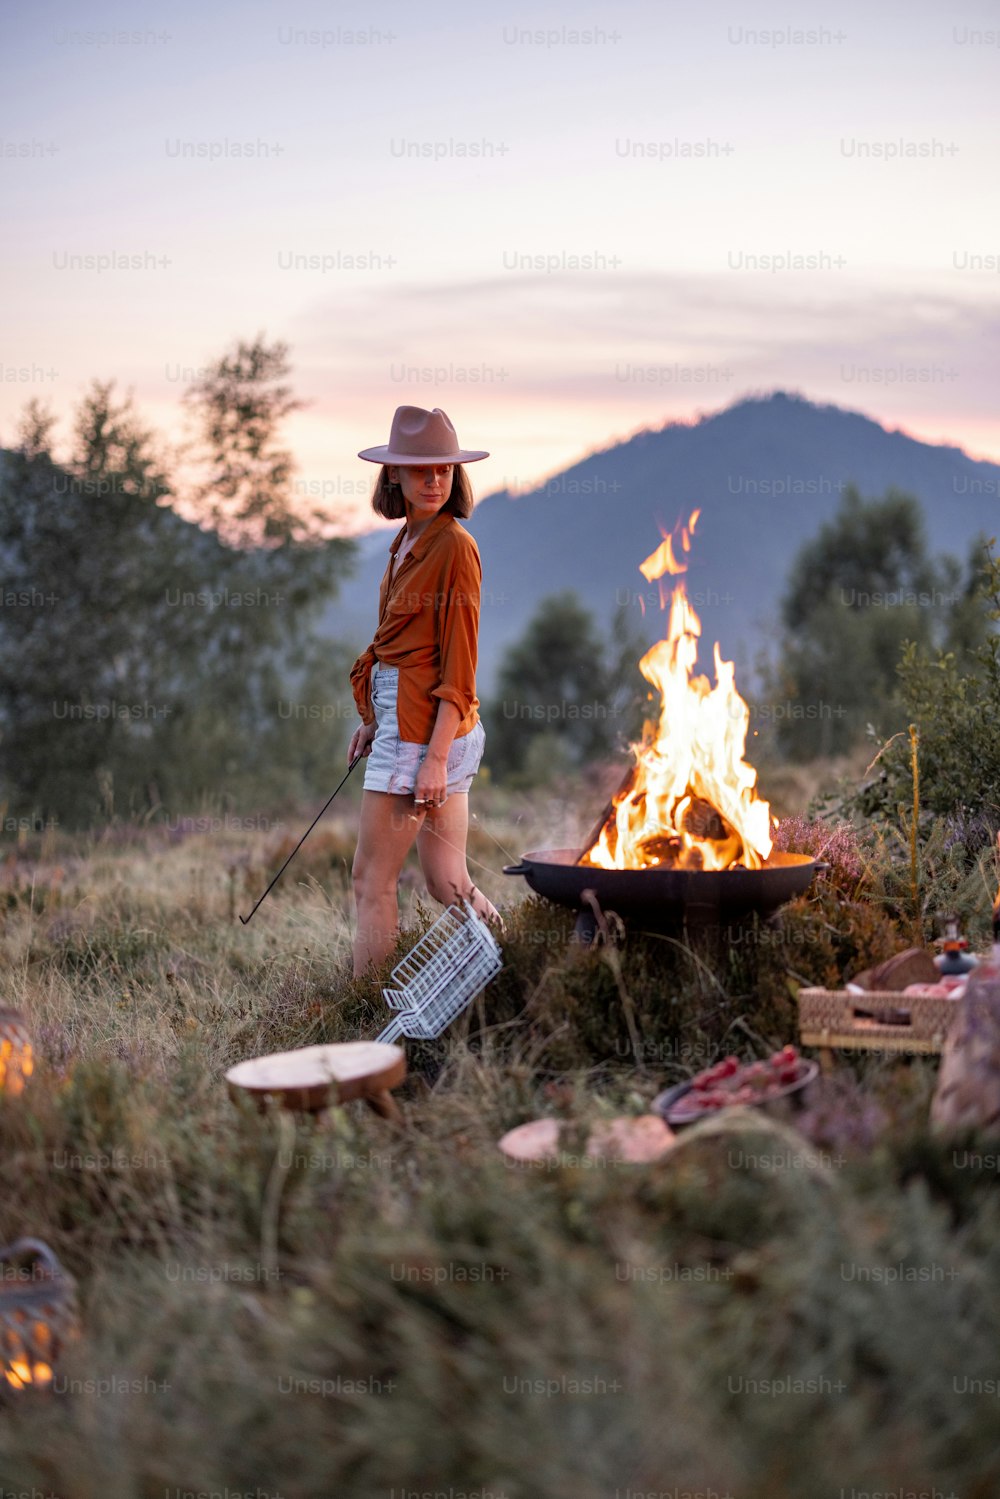 夜に焚き火と山の素晴らしい景色を眺めながら美しいピクニックをするスタイリッシュな女性。自然を楽しんだり、山を旅したりというコンセプト